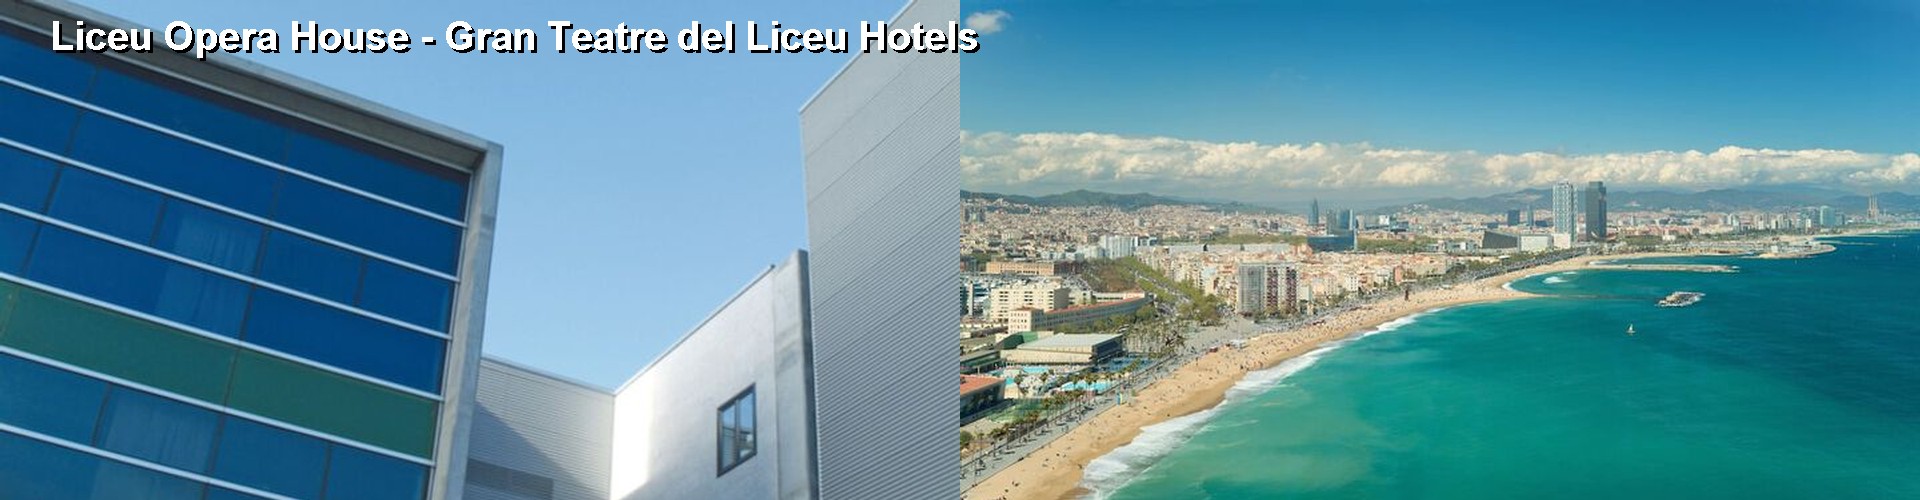 5 Best Hotels near Liceu Opera House - Gran Teatre del Liceu